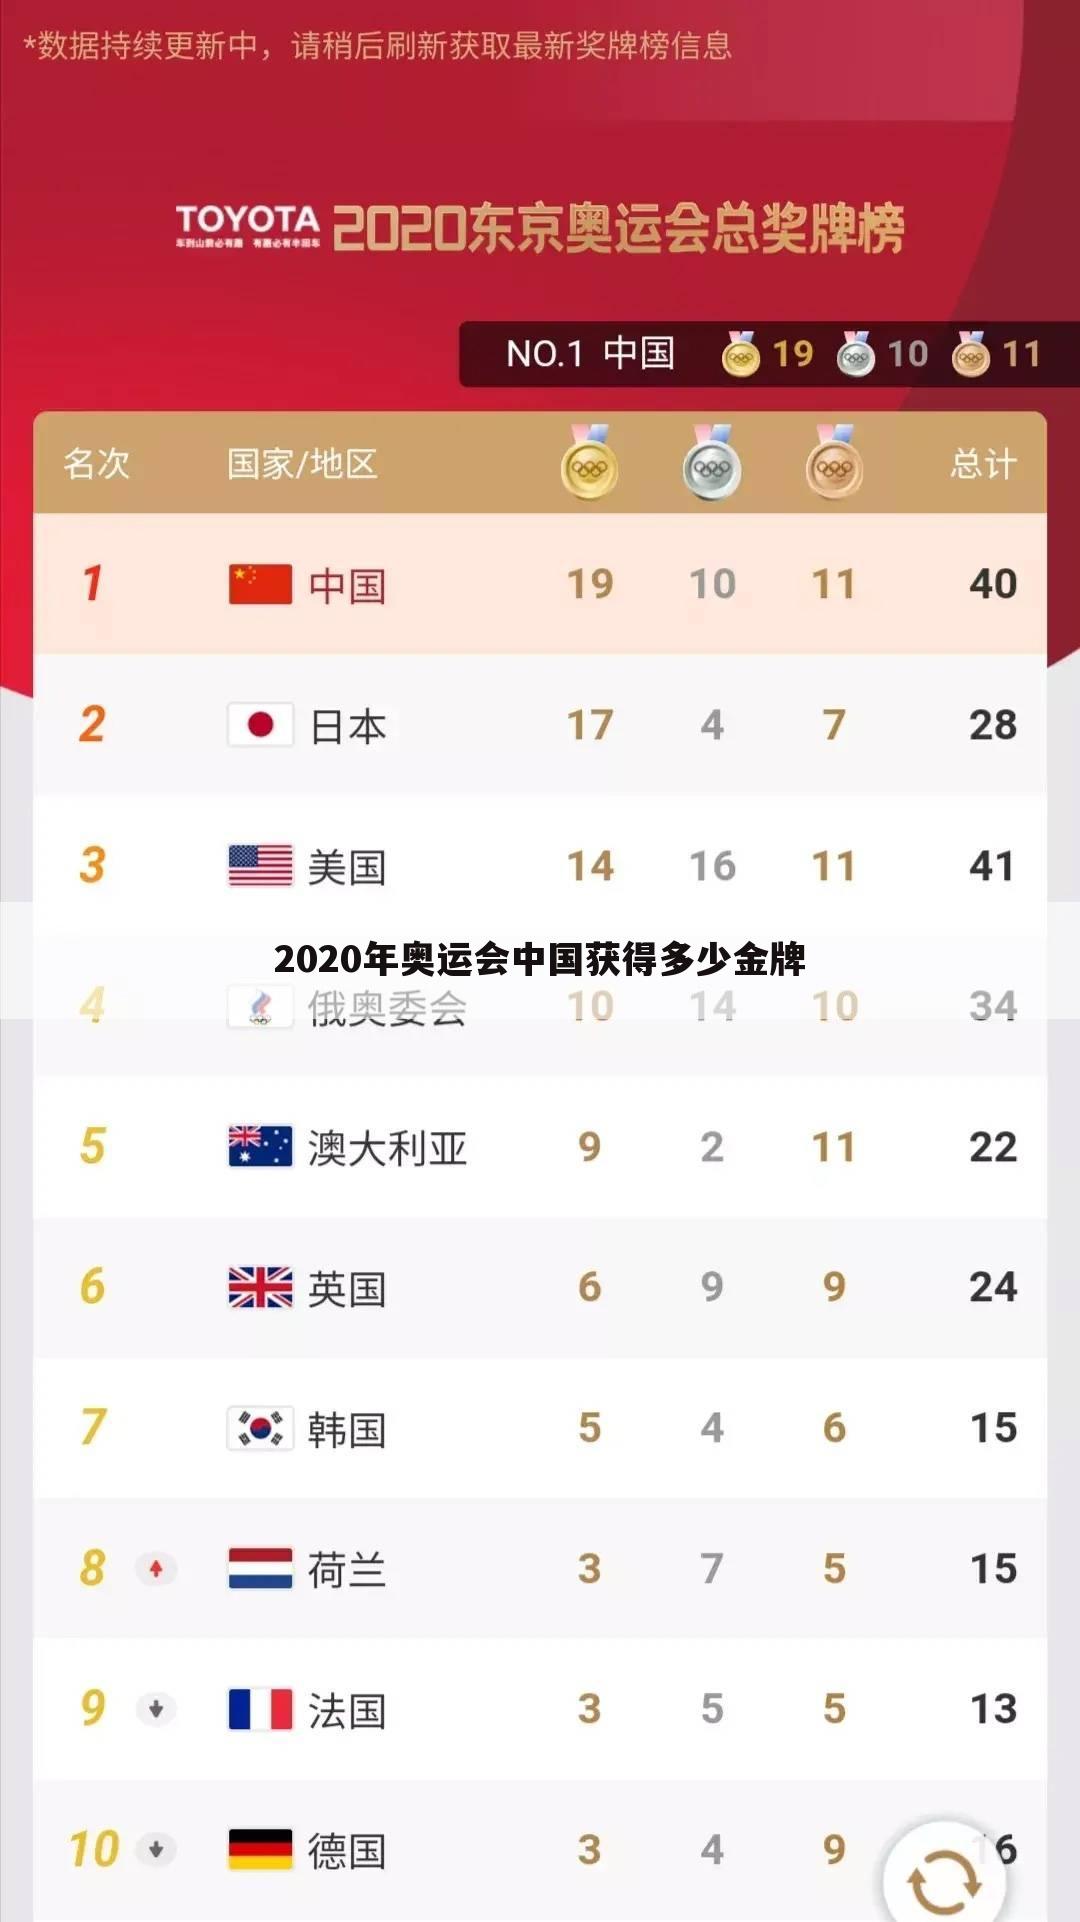 2020年奥运会中国获得多少金牌